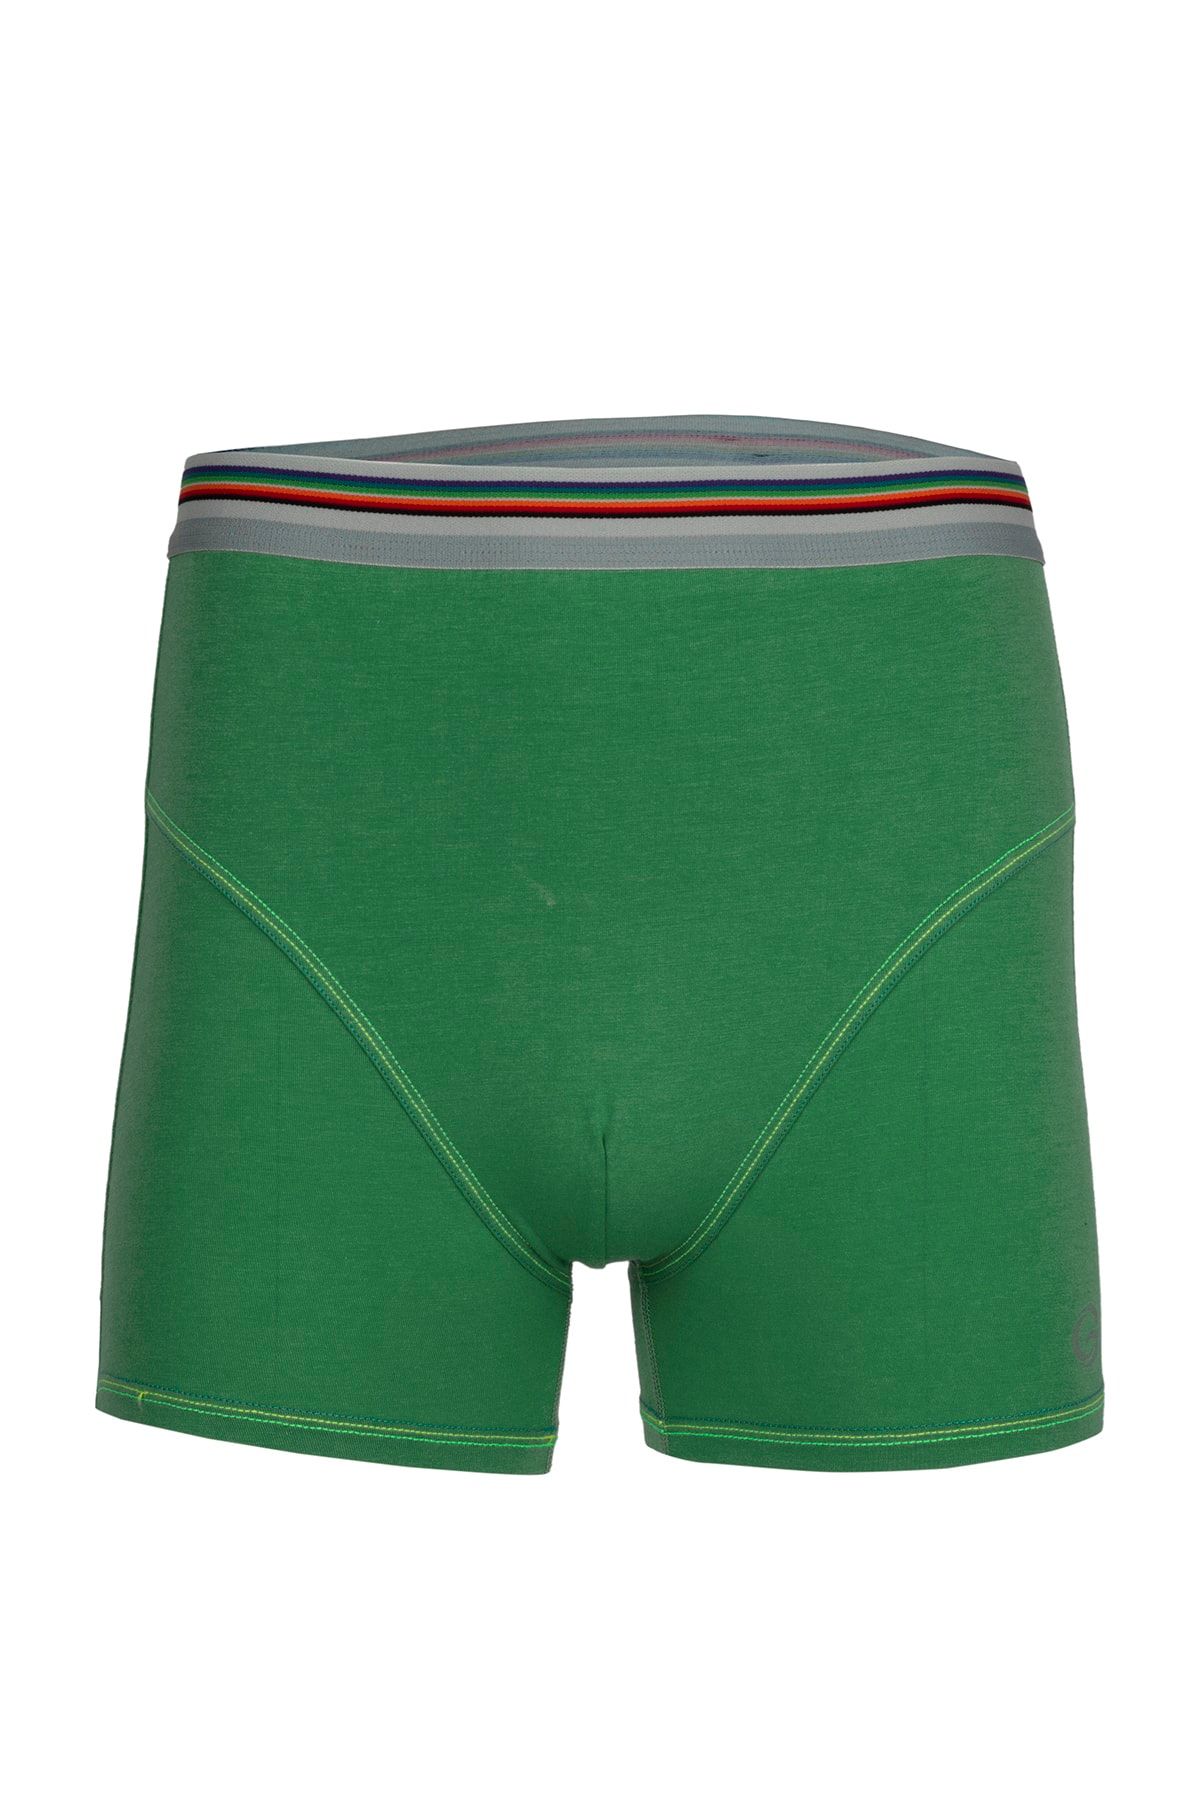 BSM Erkek Çimen Yeşili Modal Pamuk Yumuşak Nefes Alabilen Kaliteli Renkli Çizgili Boxer